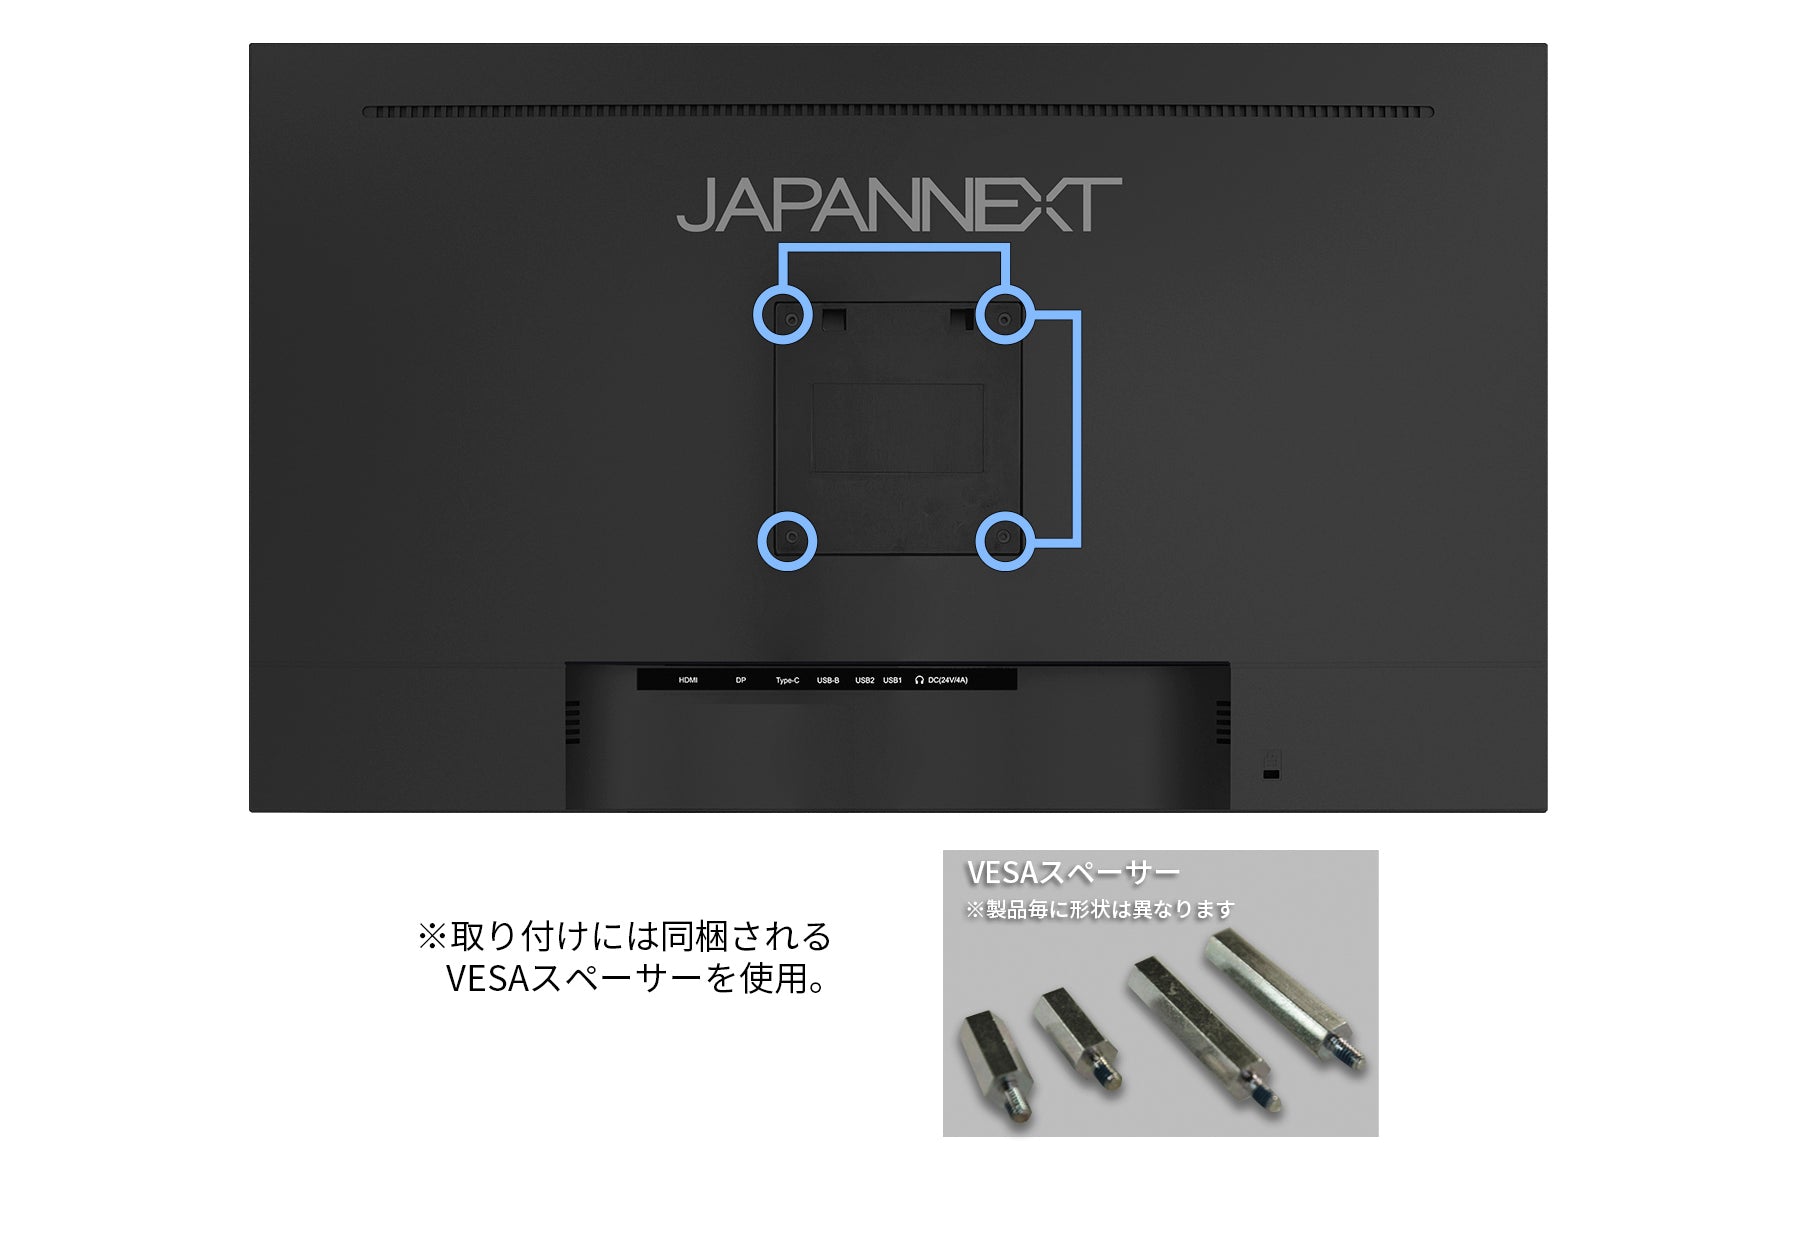 JAPANNEXT 27インチ IPSパネル搭載 4K(3840x2160)解像度 液晶モニター